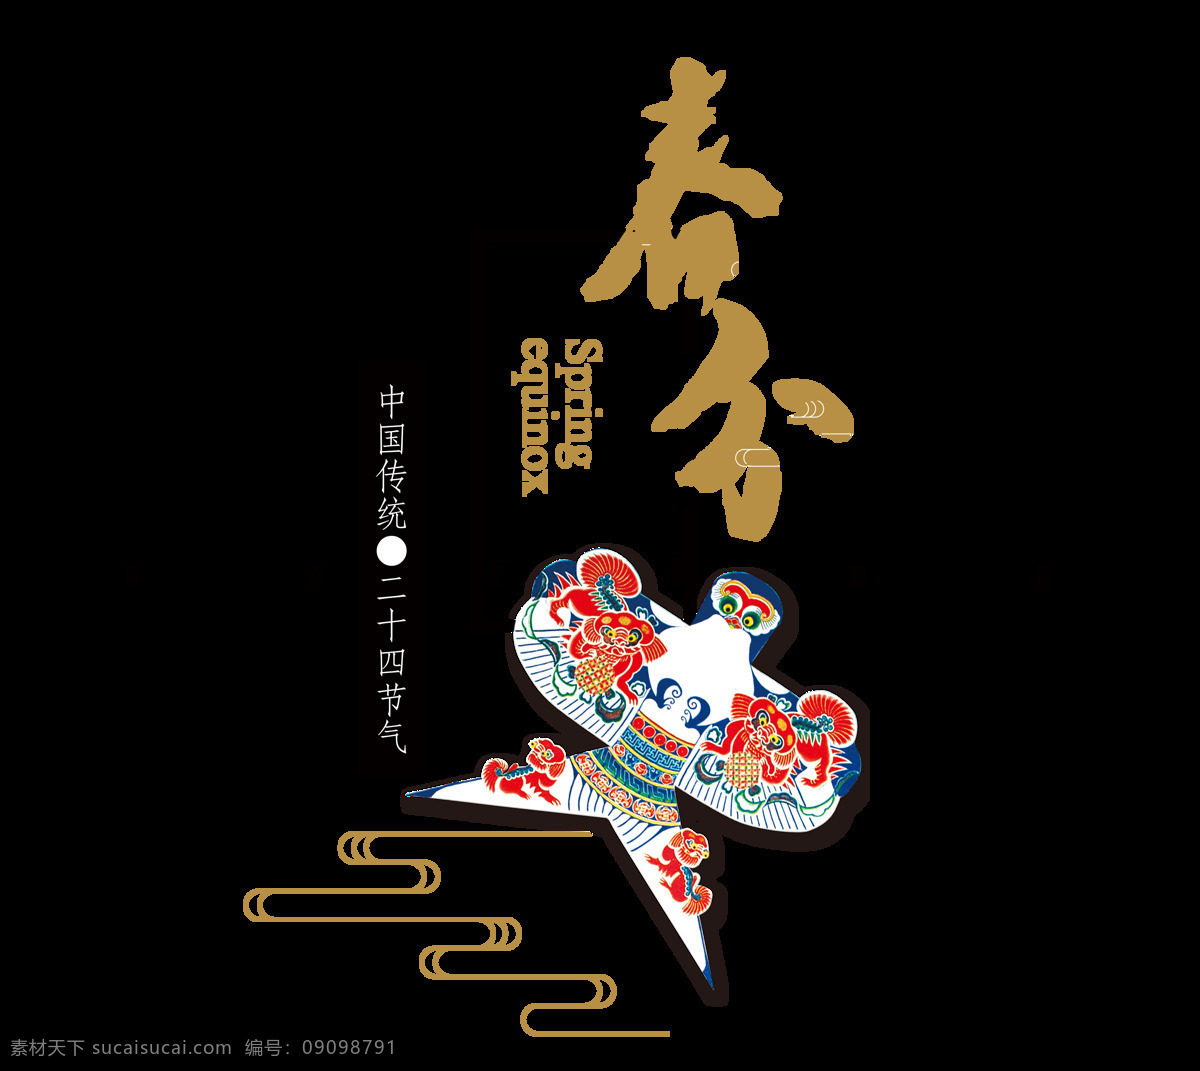 二十四节气 春分 ae 模板 免费素材 视频模板 民俗 传统 中国风 春天